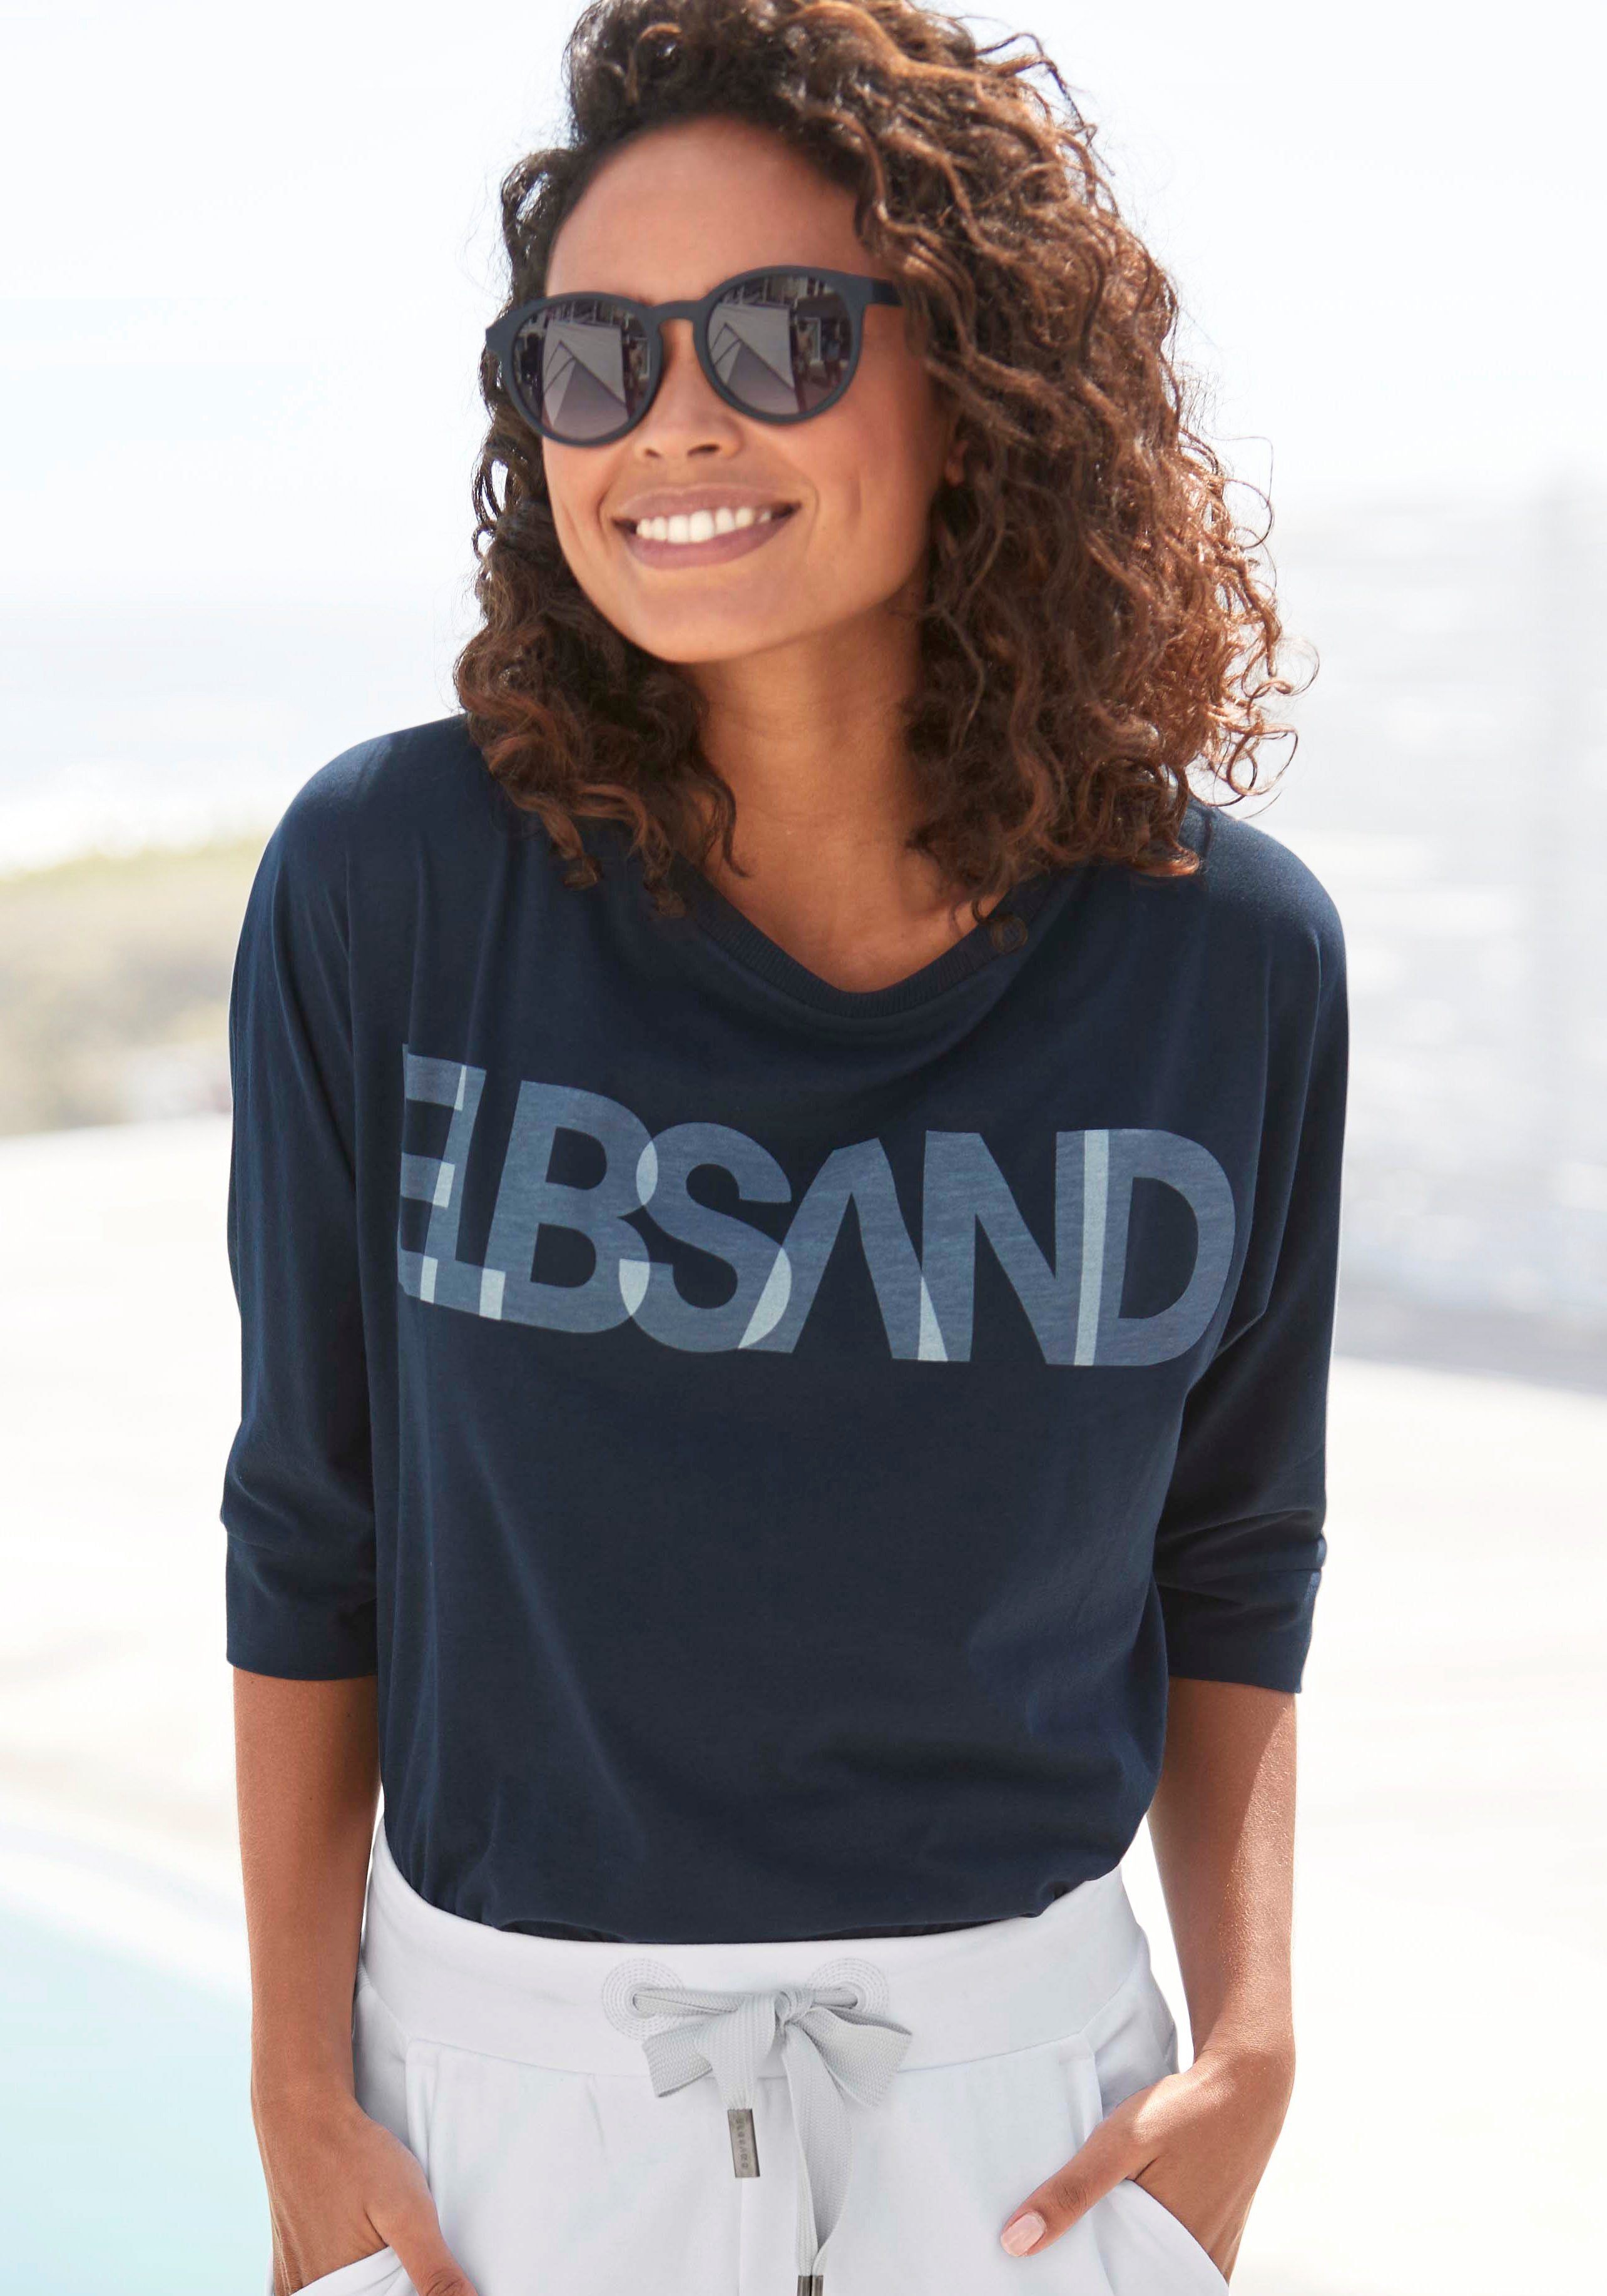 Elbsand 3/4-Arm-Shirt mit Logodruck, Baumwoll-Mix, lockere Passform coldwater